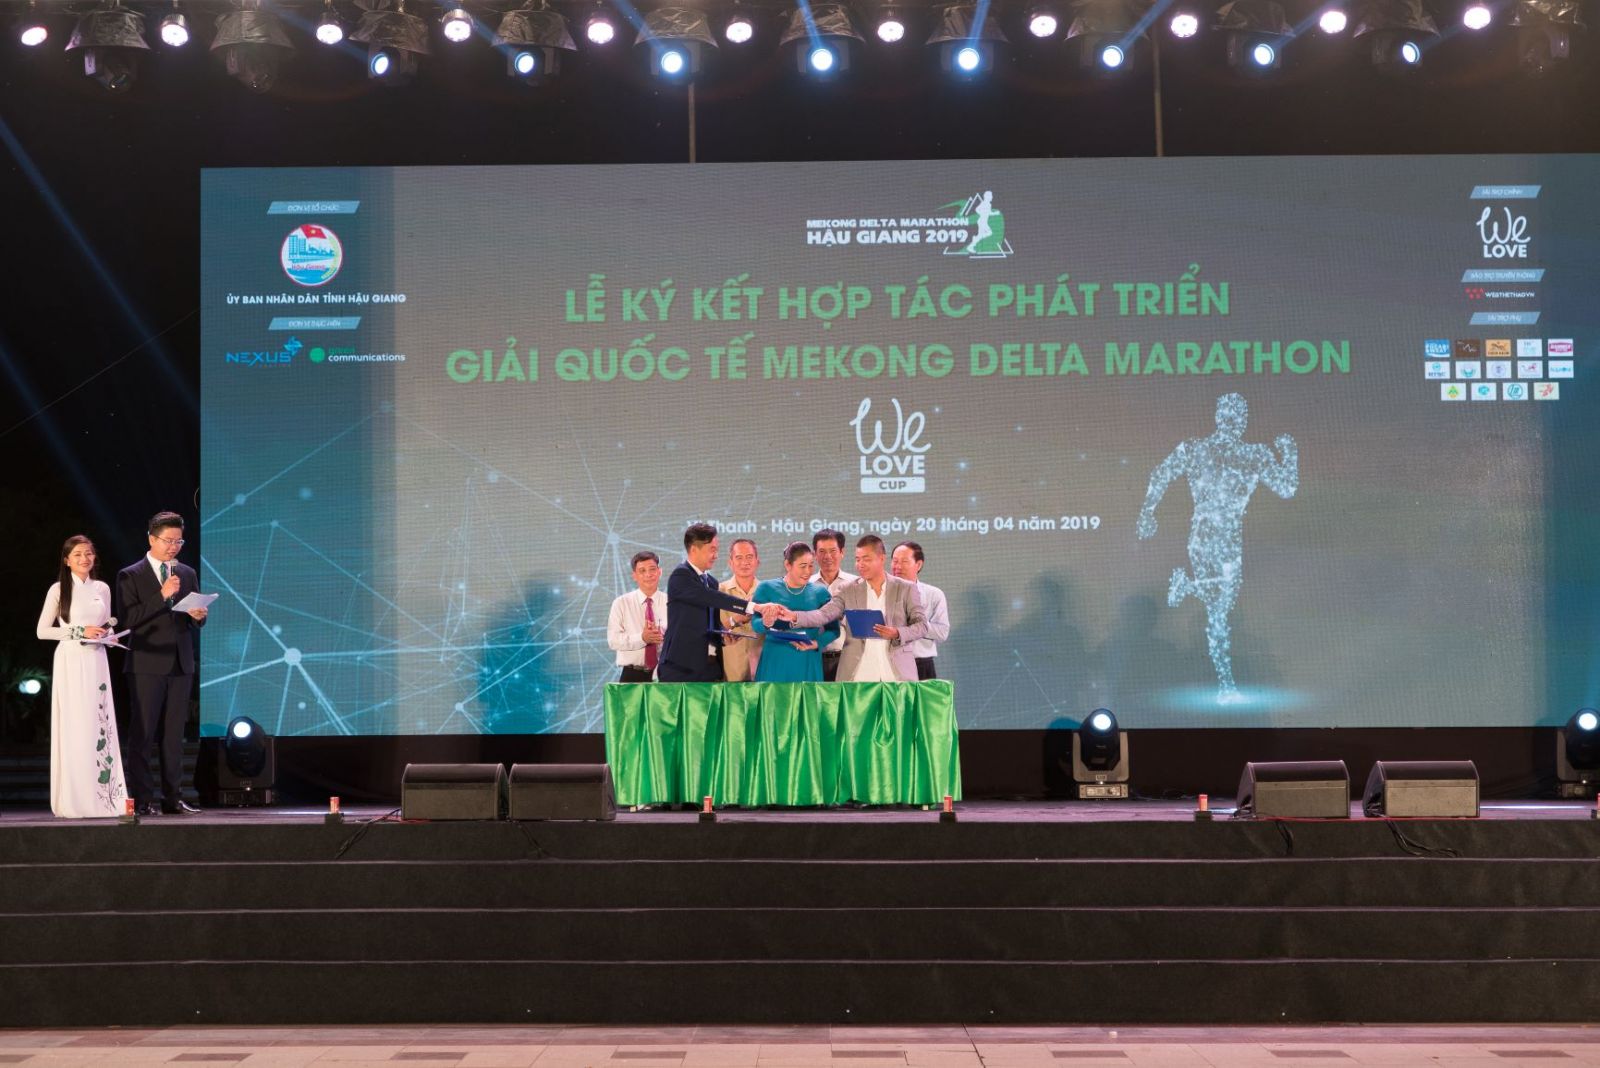 We Love trở thành Thương Hiệu Đồng Hành Cùng Giải Mekong Delta Marathon Hậu Giang 2019 - Cup We Love